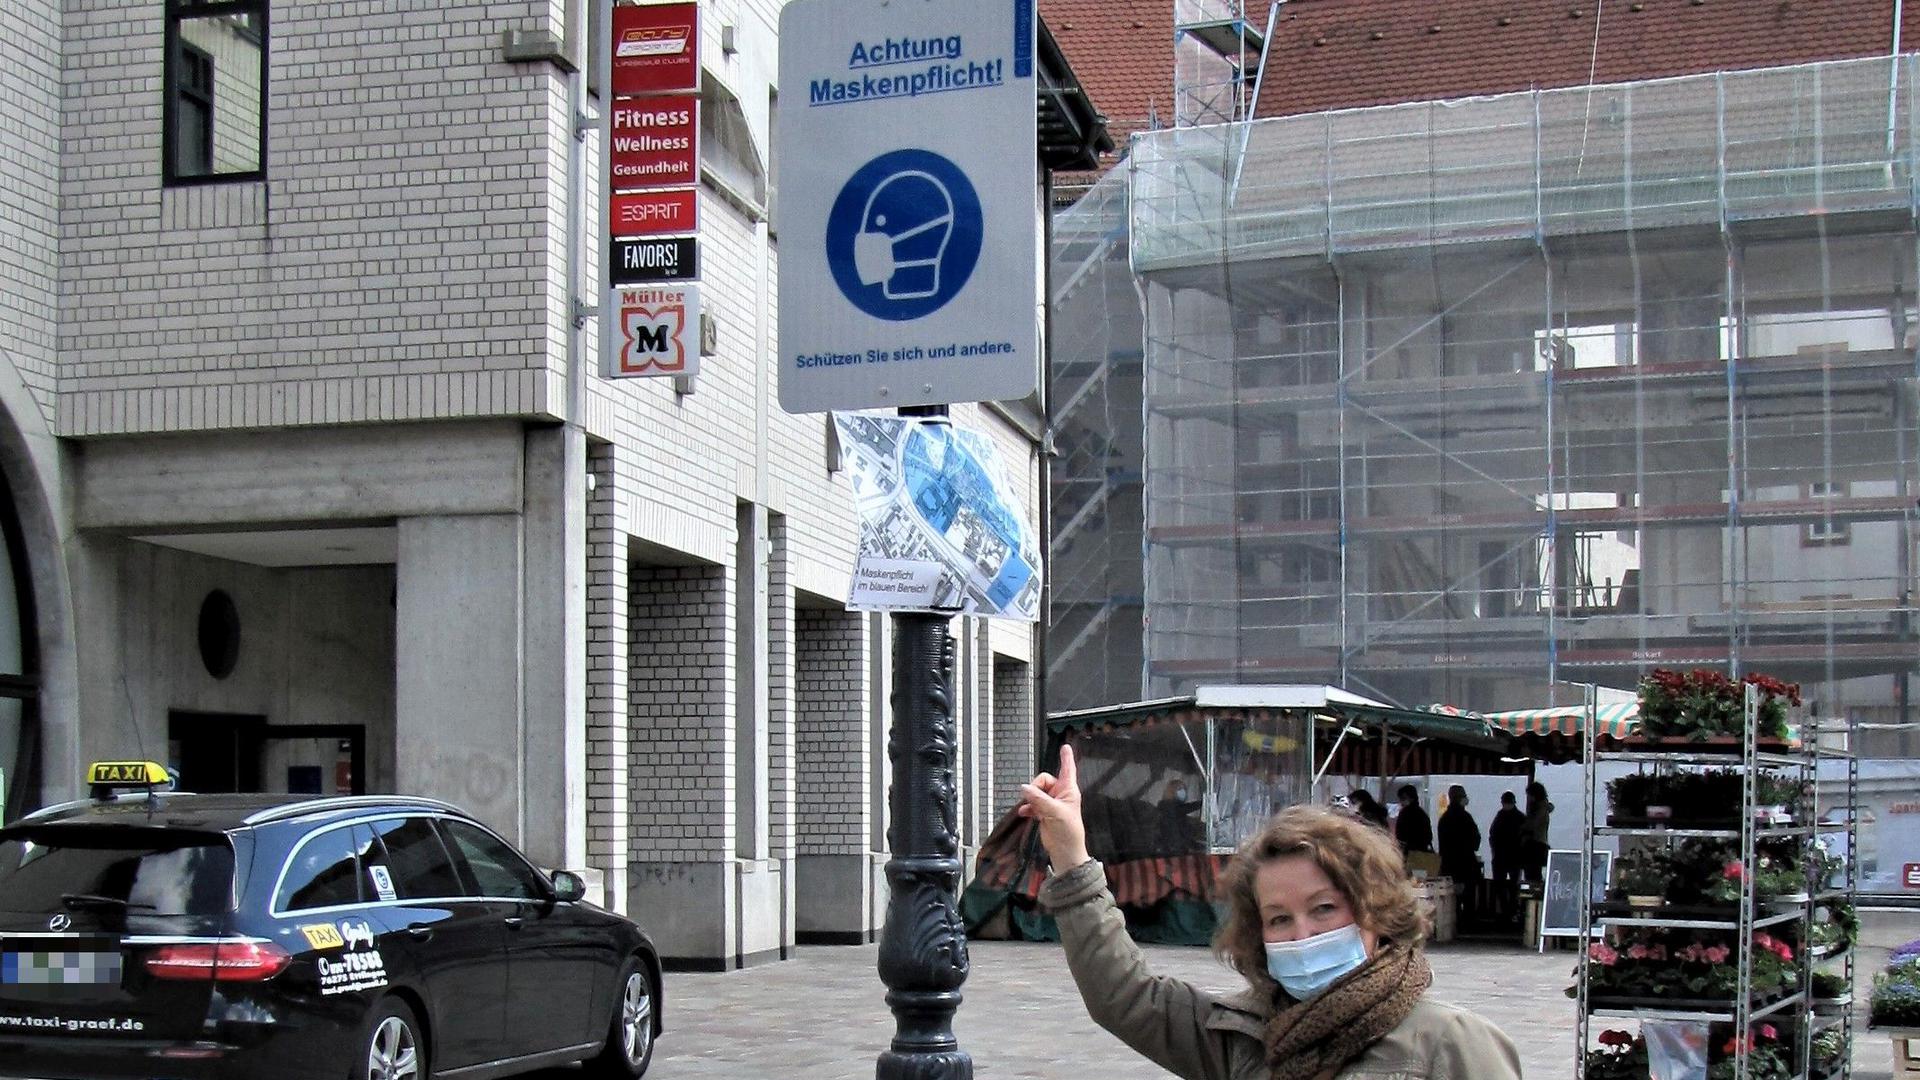 Ruth Lingenfelser steht vor einem Schild mit der Aufschrift „Achtung Maskenpflicht“ in Ettlingen, vor ihr auf dem Boden liegt eine getragene Corona-Maske.